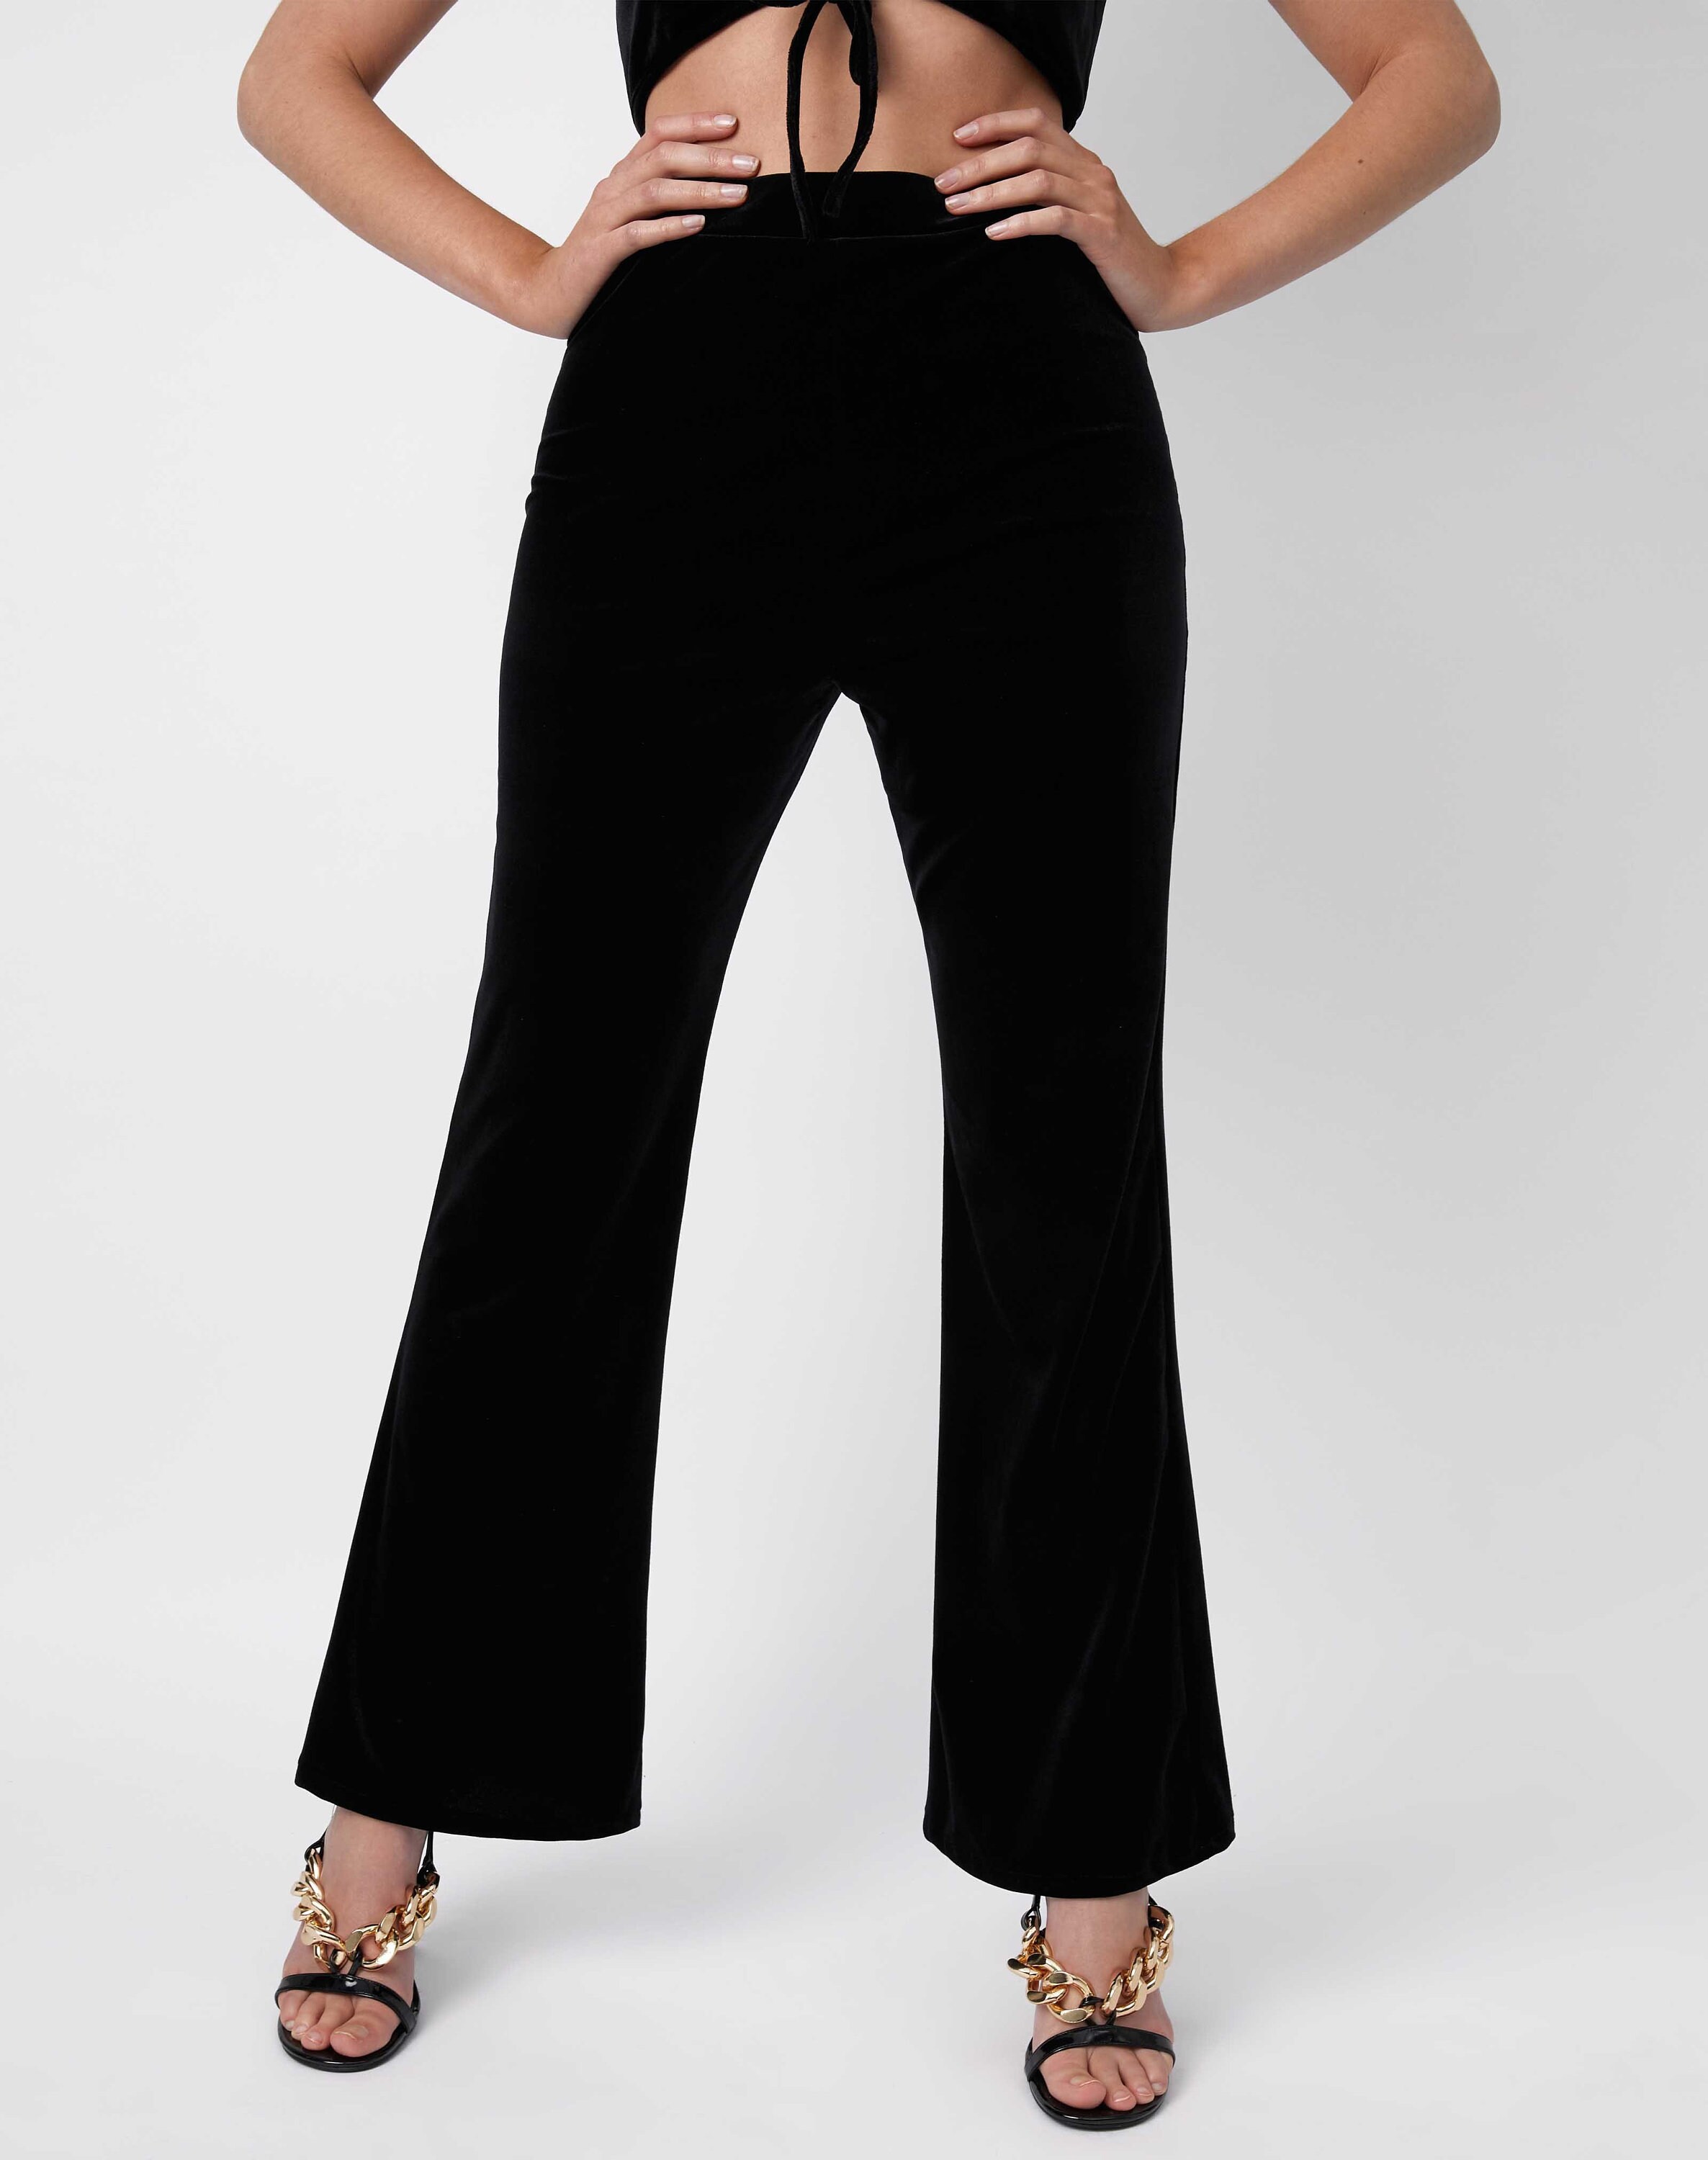 Women's Black Velvet Wide Leg Trousers Size: 12-18 | Etsy